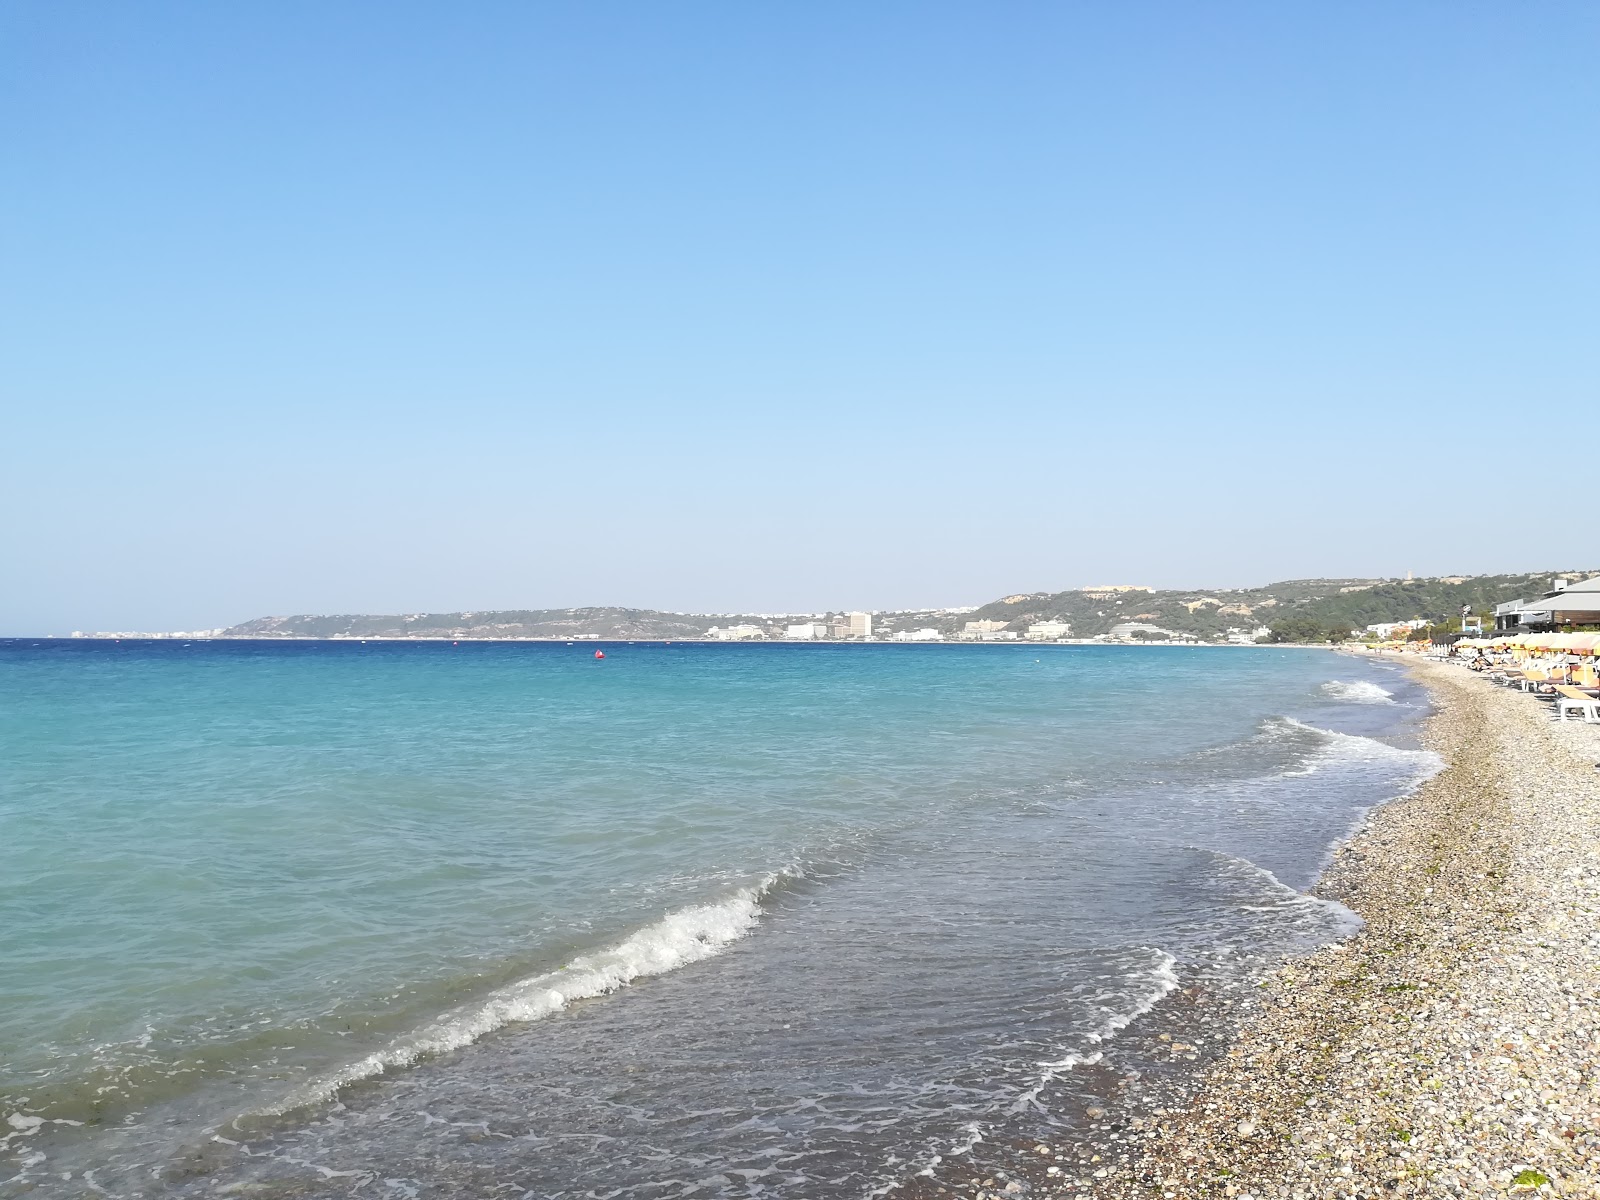 Ialysos beach'in fotoğrafı doğrudan plaj ile birlikte